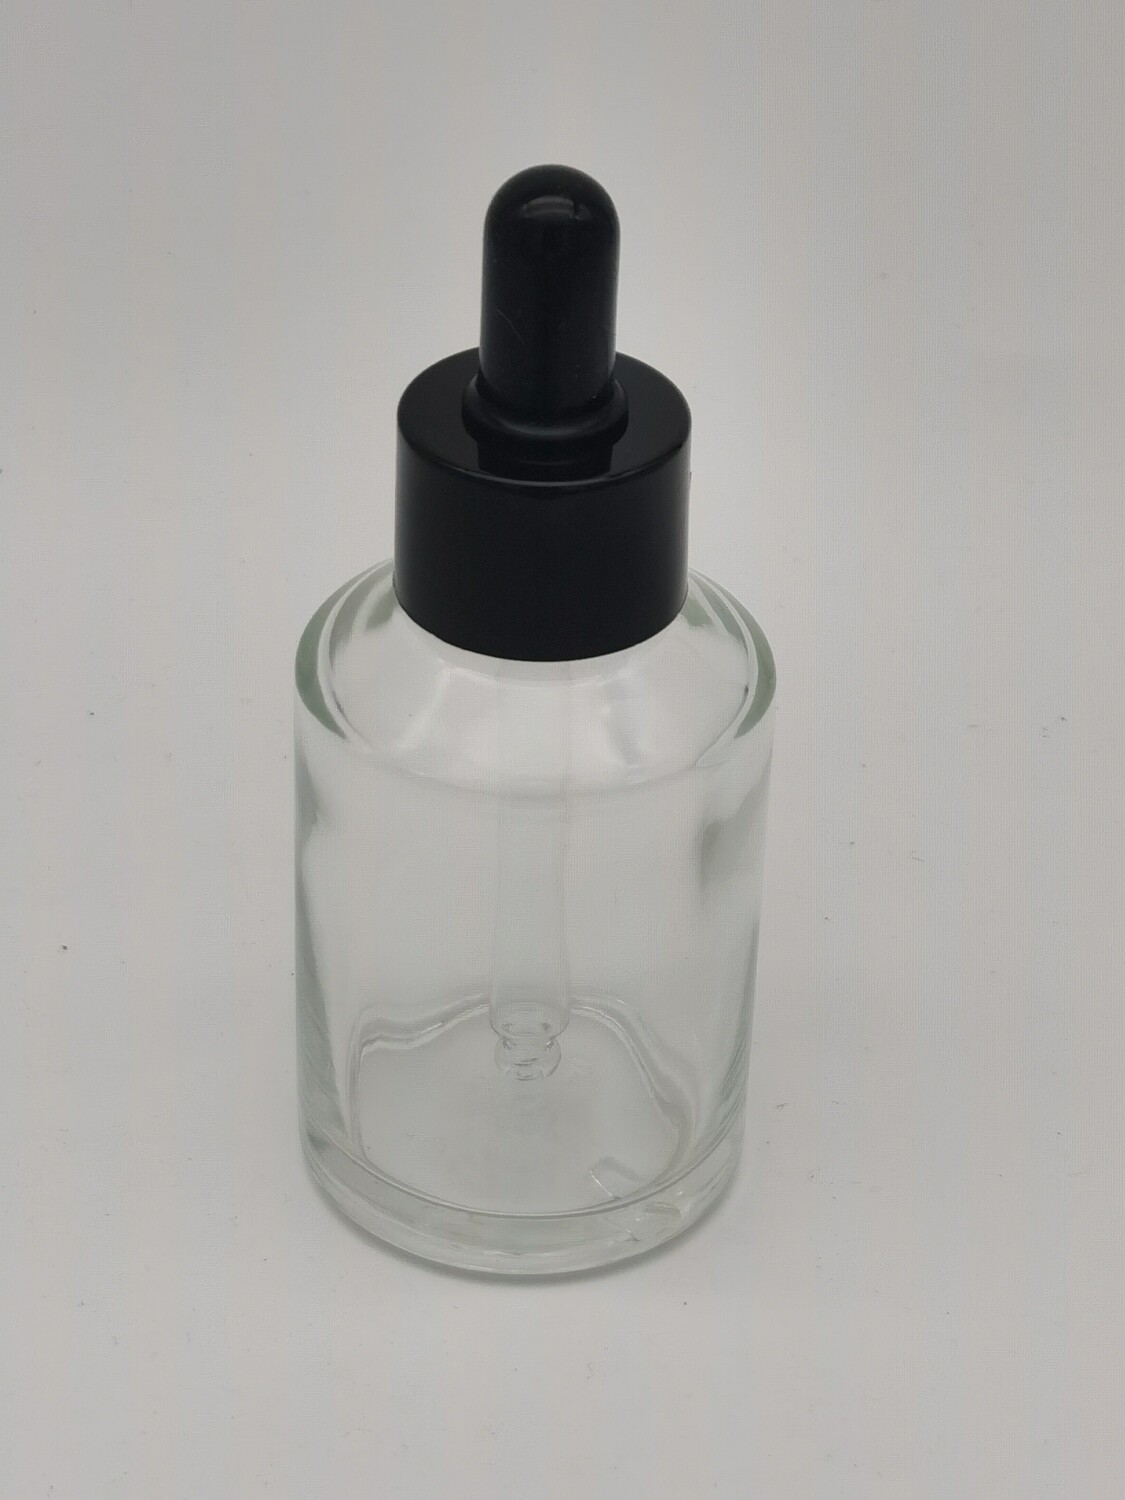 50mL Round Clear Dropper Bottles Black Teat Gloss Black Cap - BULK Pack of 10